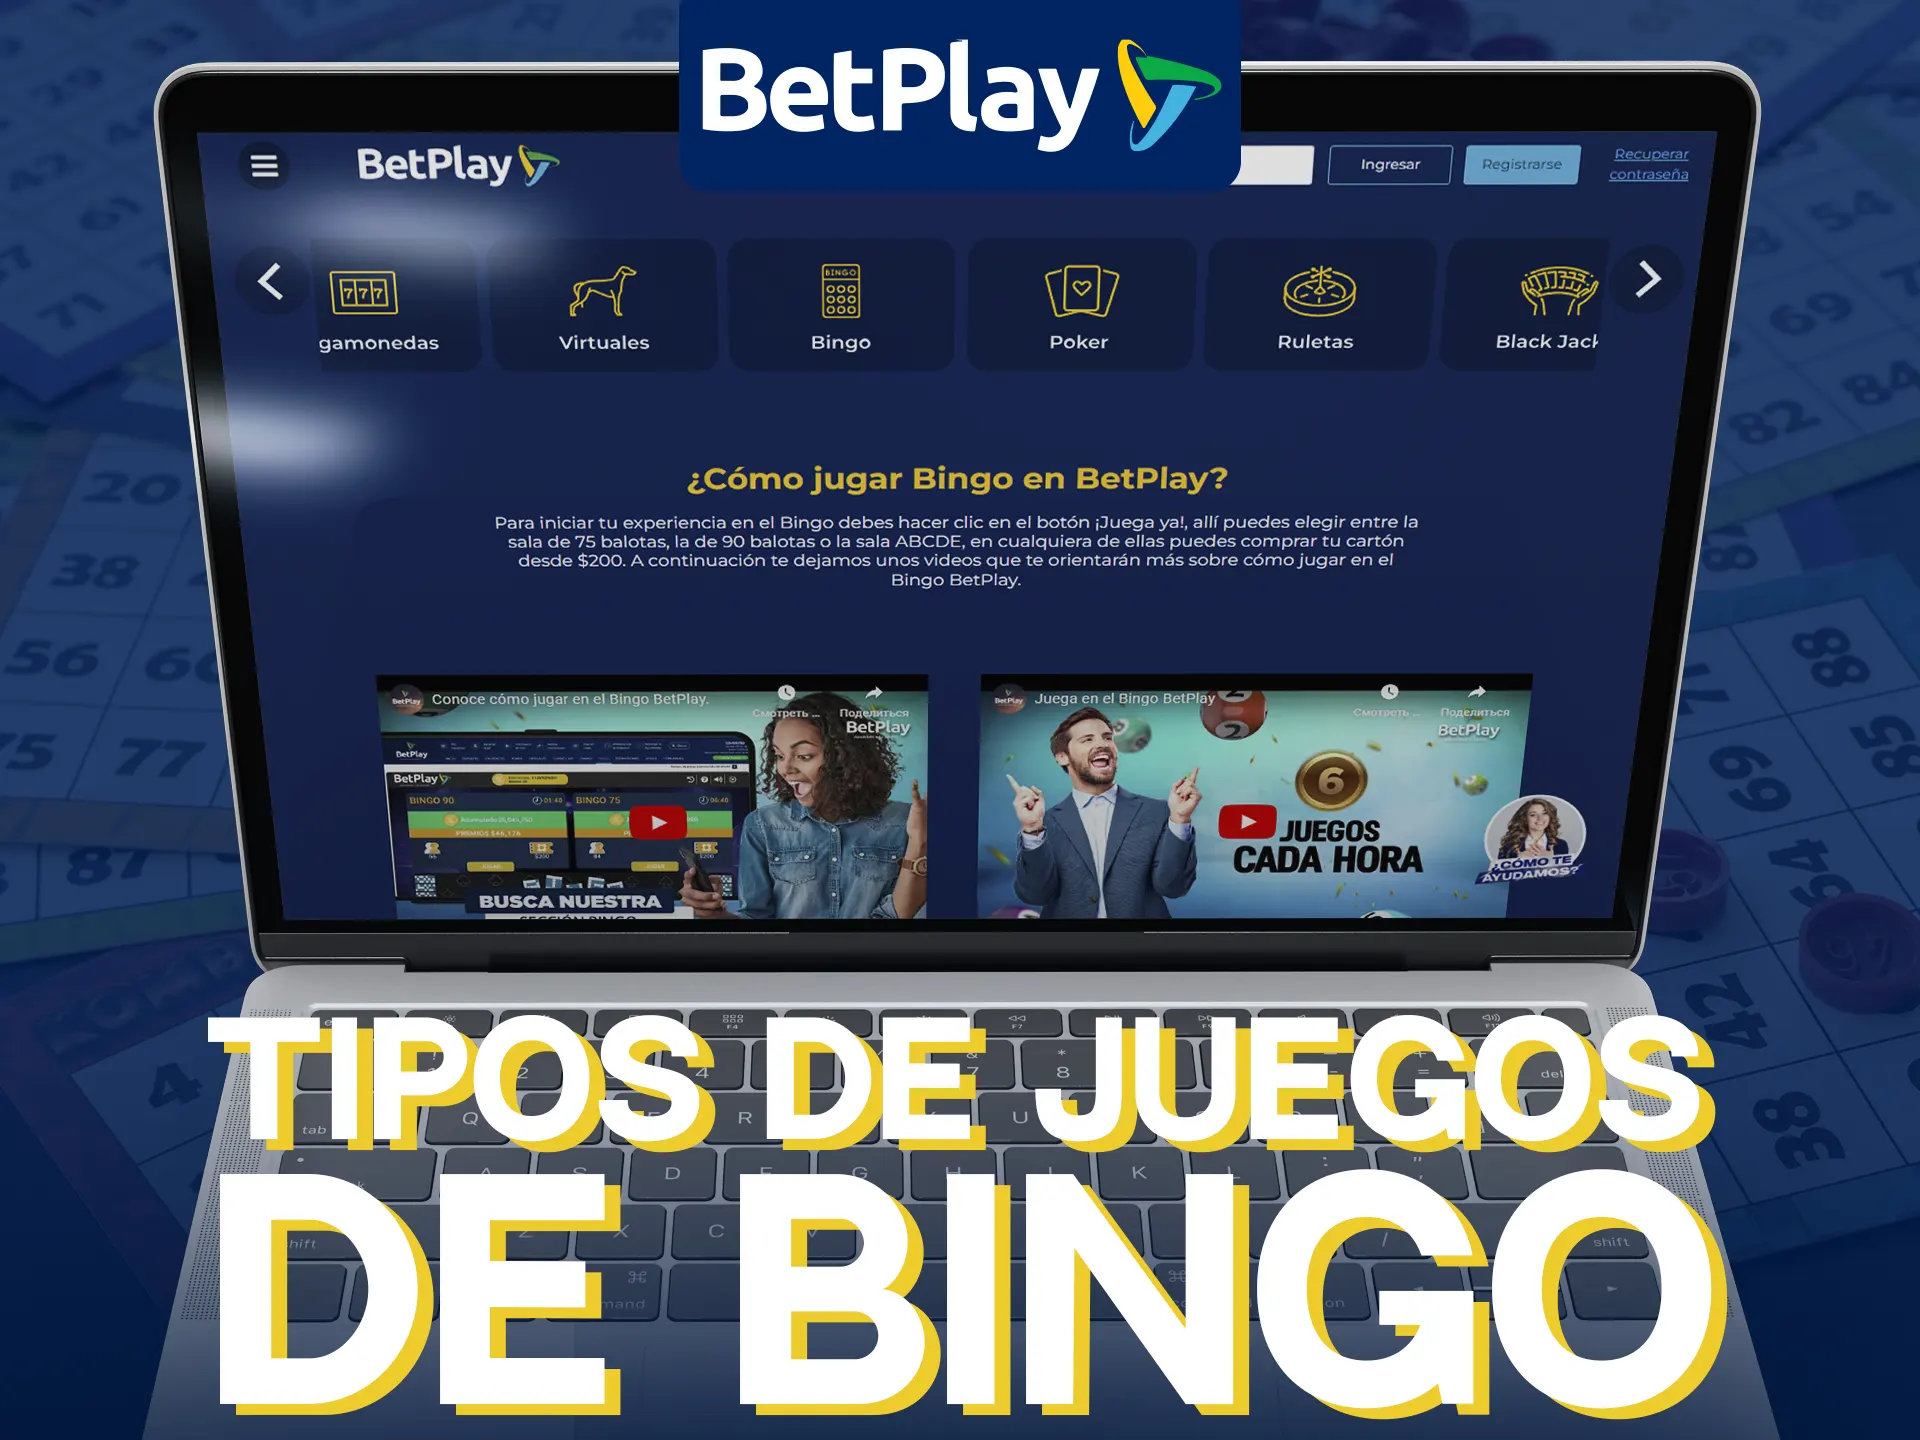 Descubra los tipos de juegos de bingo disponibles en BetPlay.